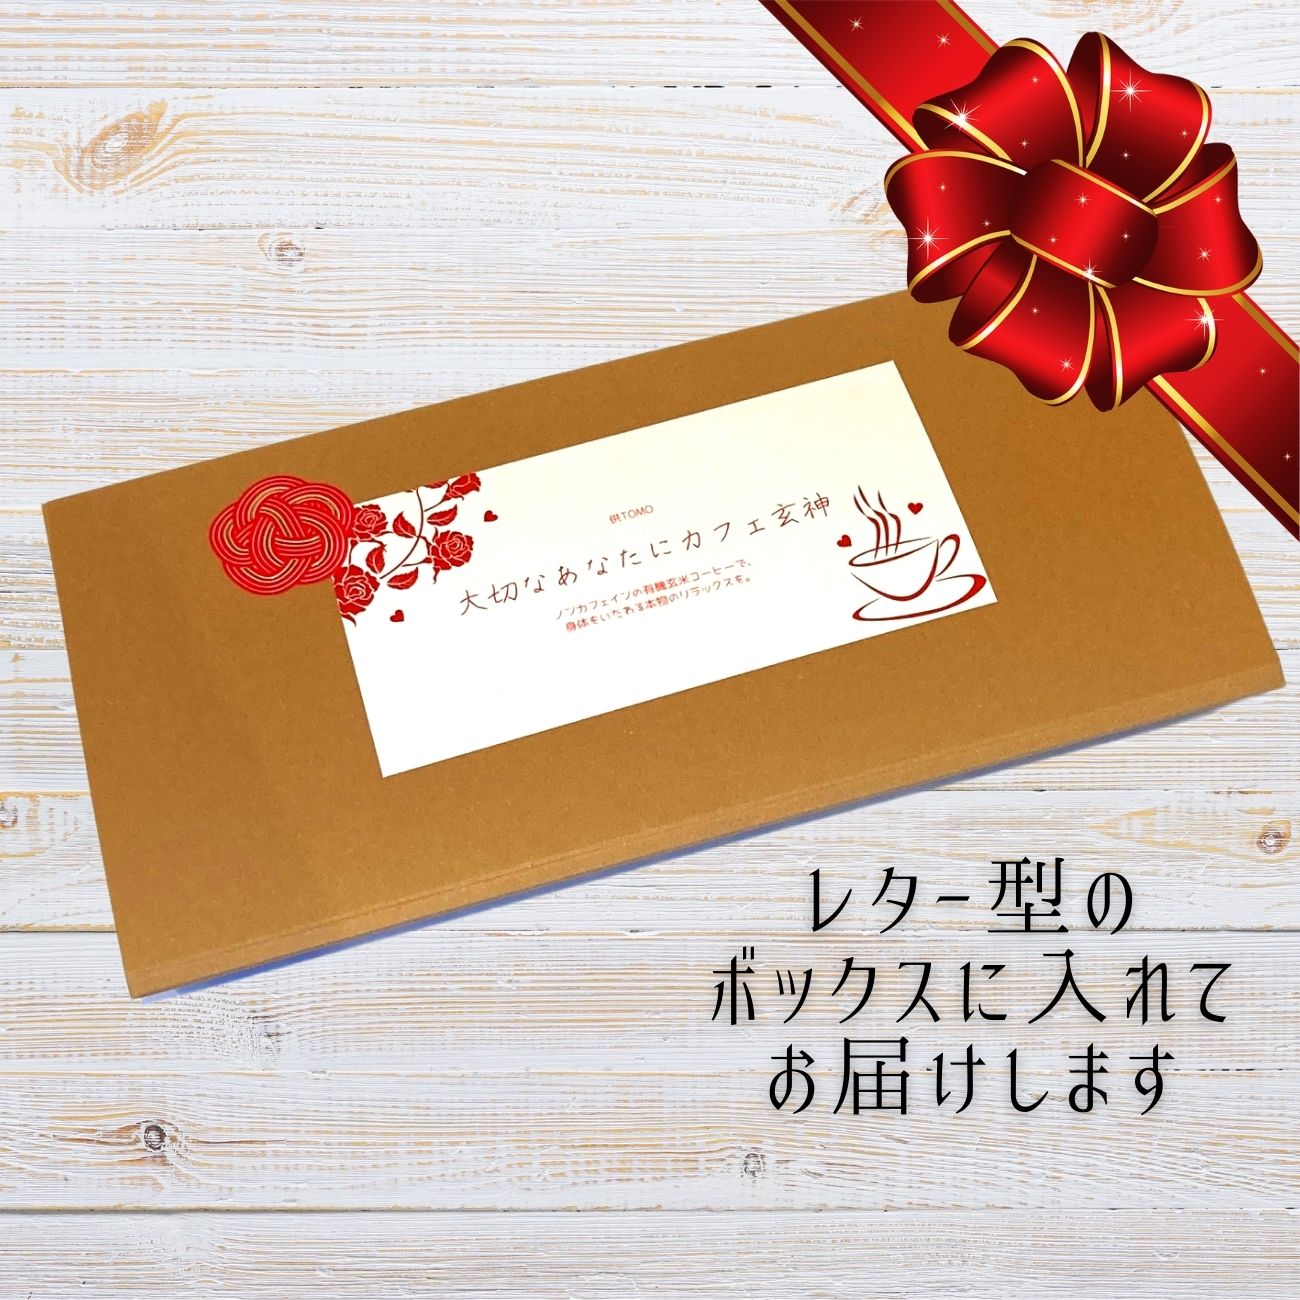 Café Genshin letter box - 5 tetra bags